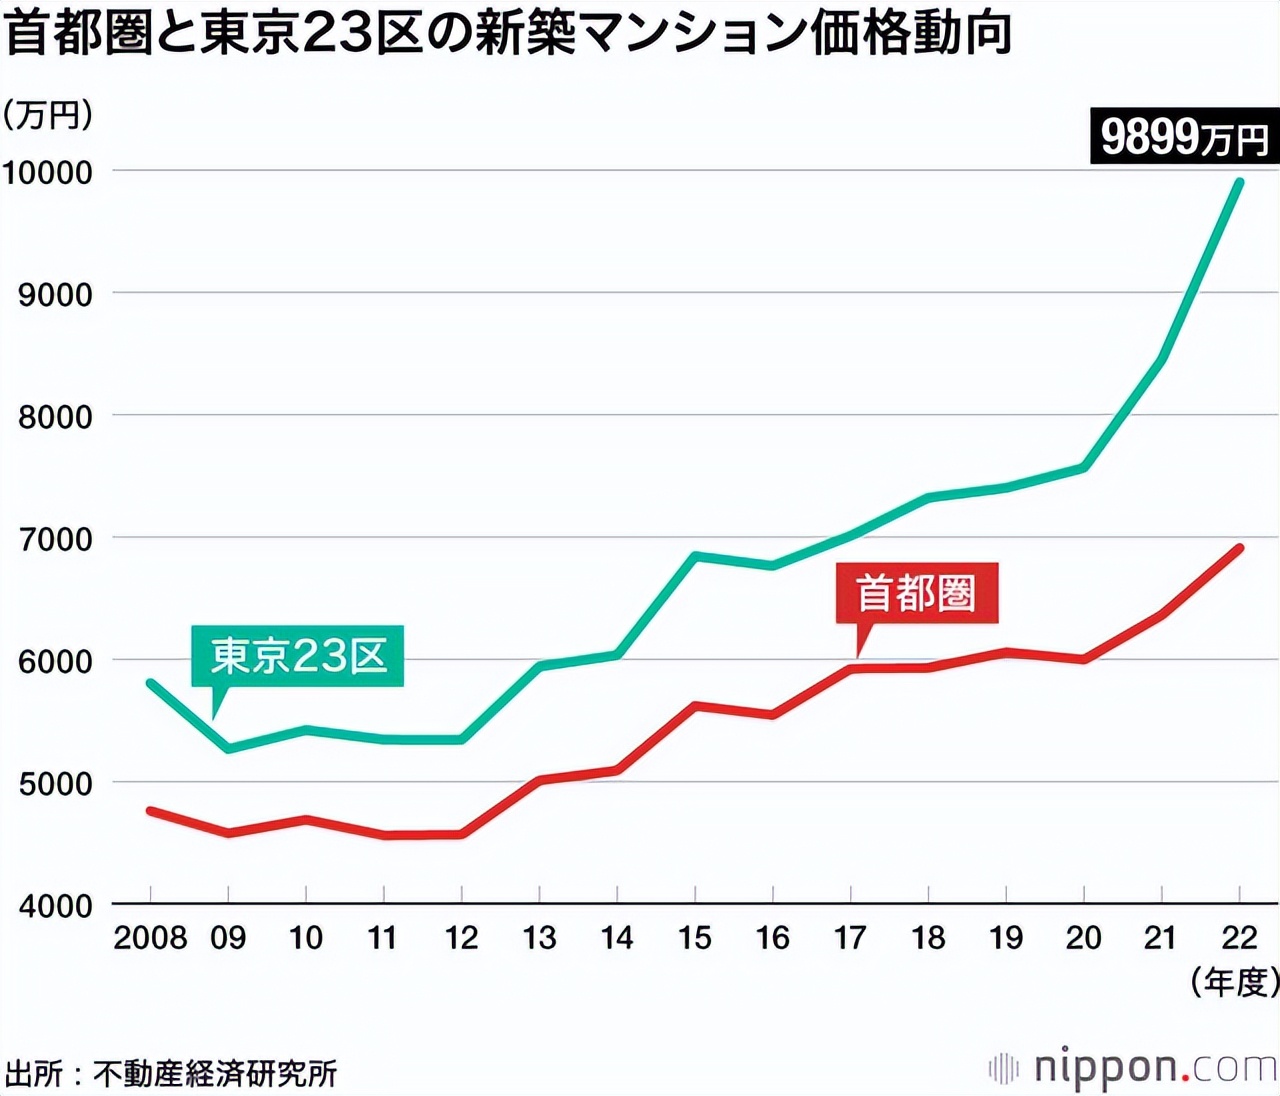 东京23区房价逼近1亿日元创新高!和国内一线城市比到底谁更贵?